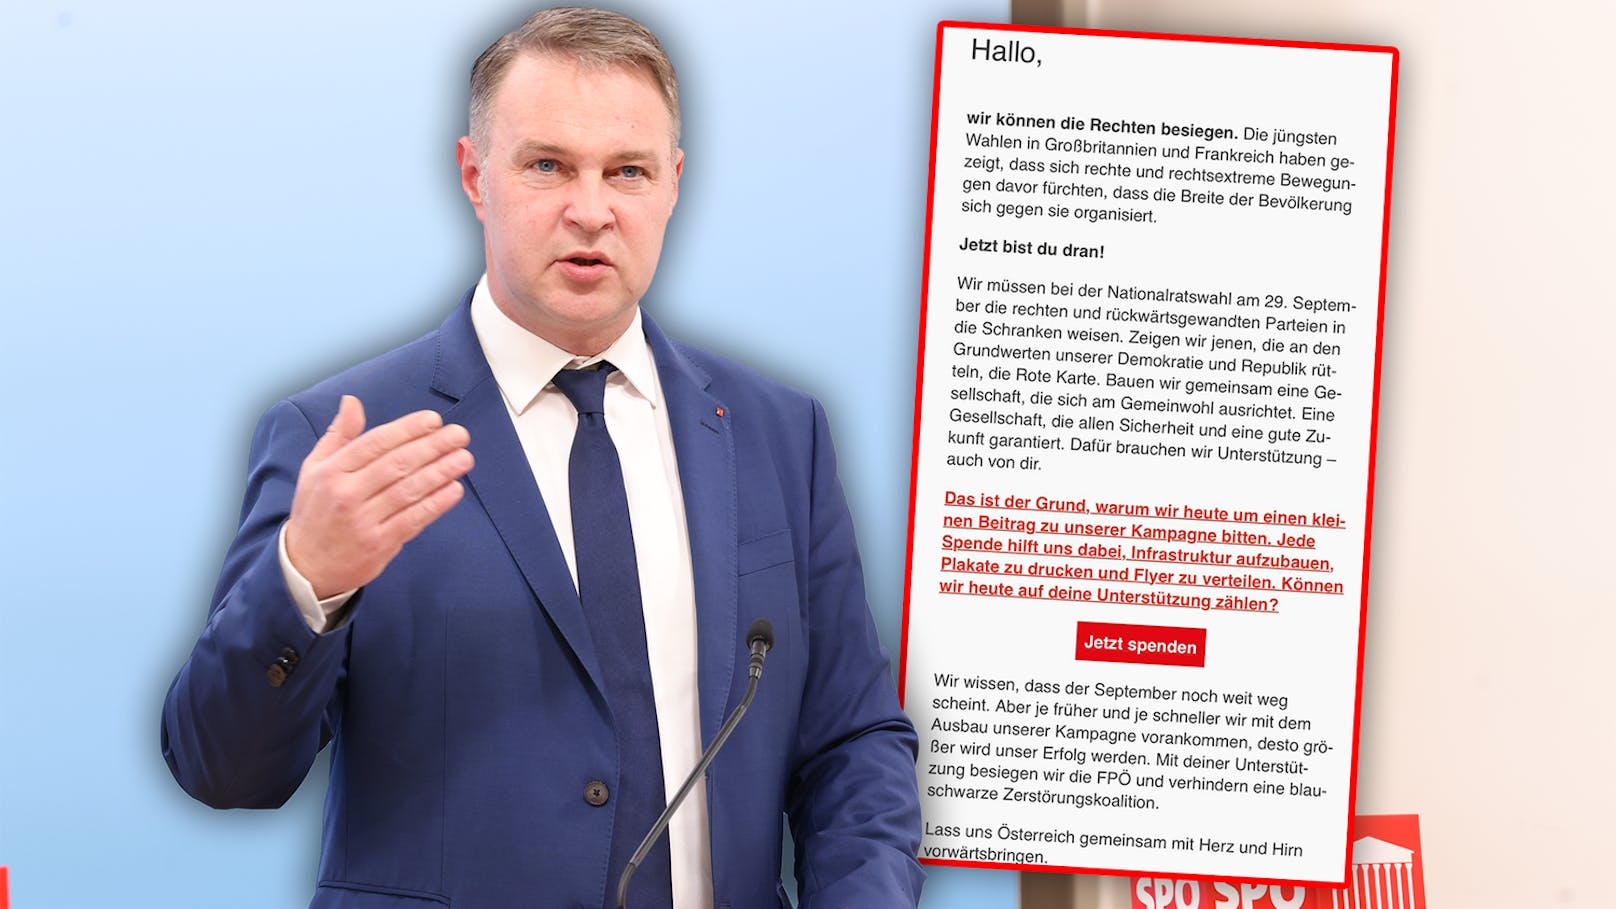 Um FPÖ zu verhindern – SPÖ bittet erneut um Spenden